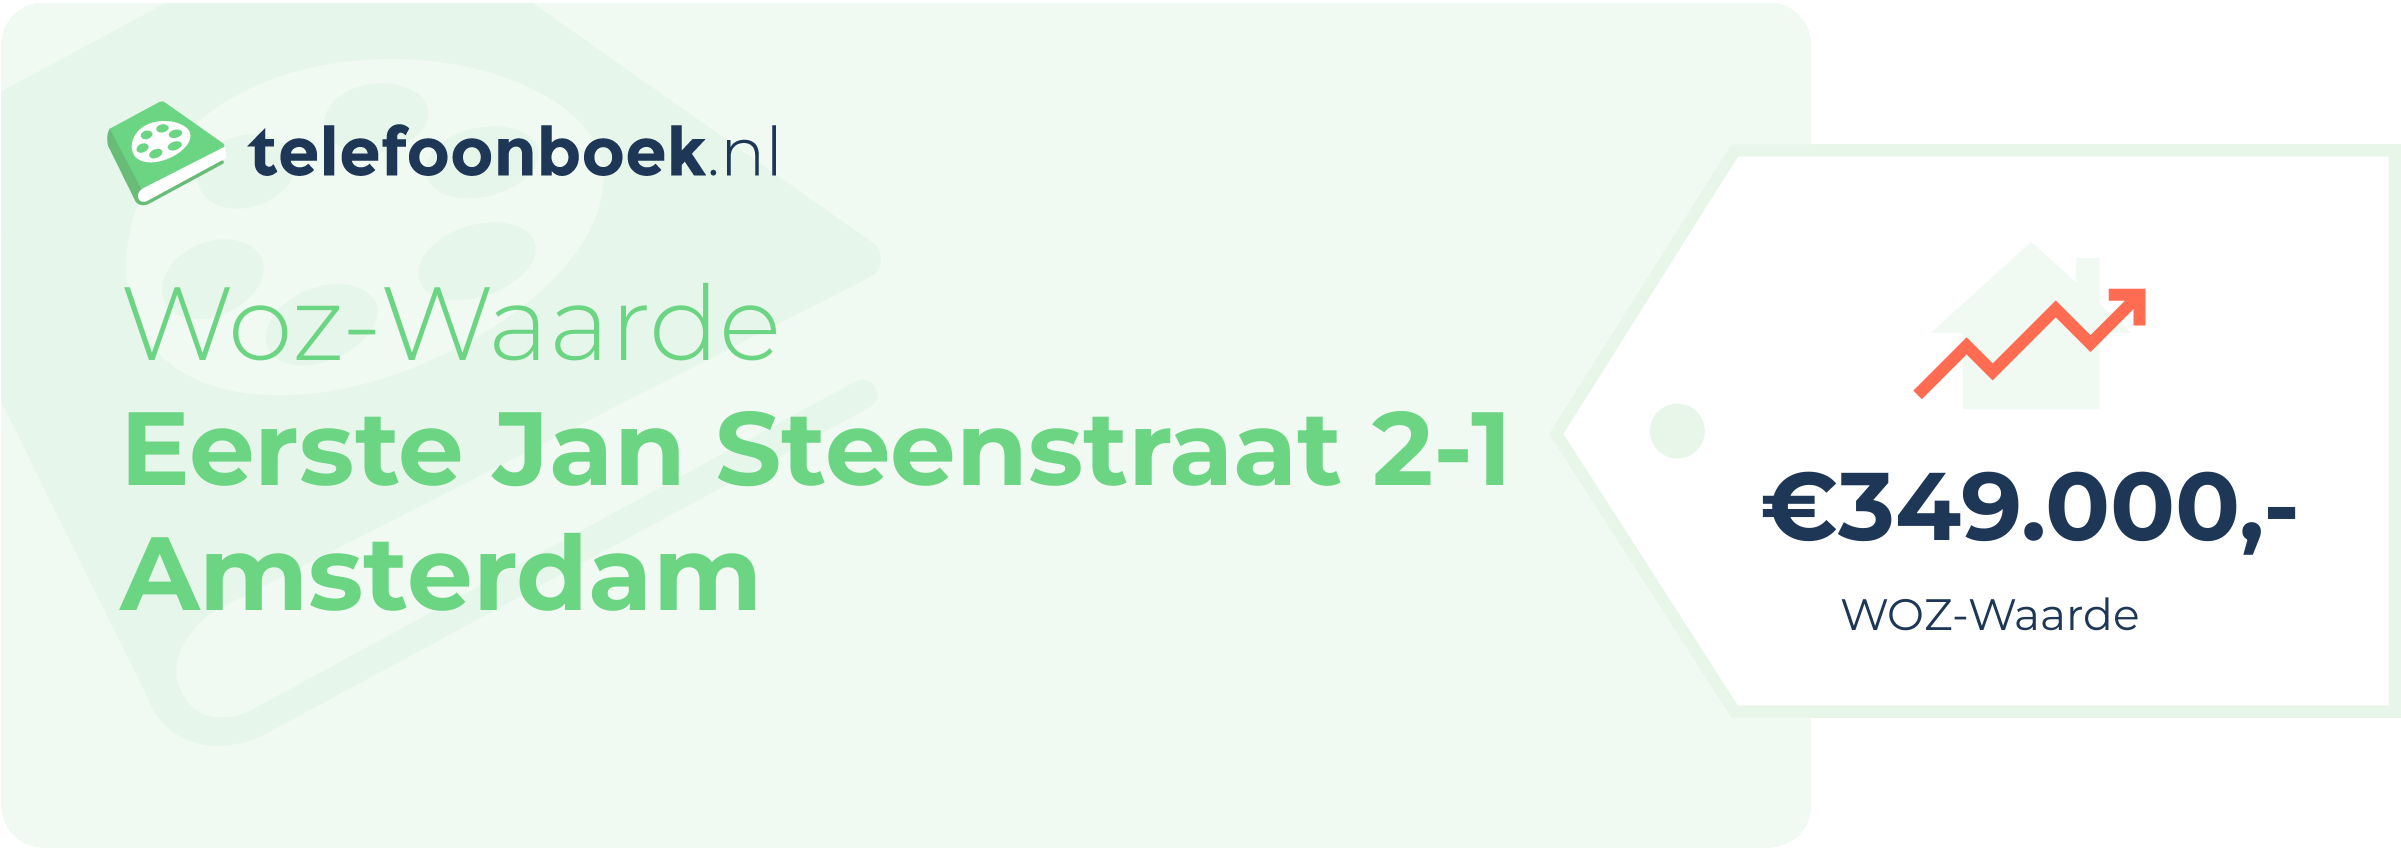 WOZ-waarde Eerste Jan Steenstraat 2-1 Amsterdam